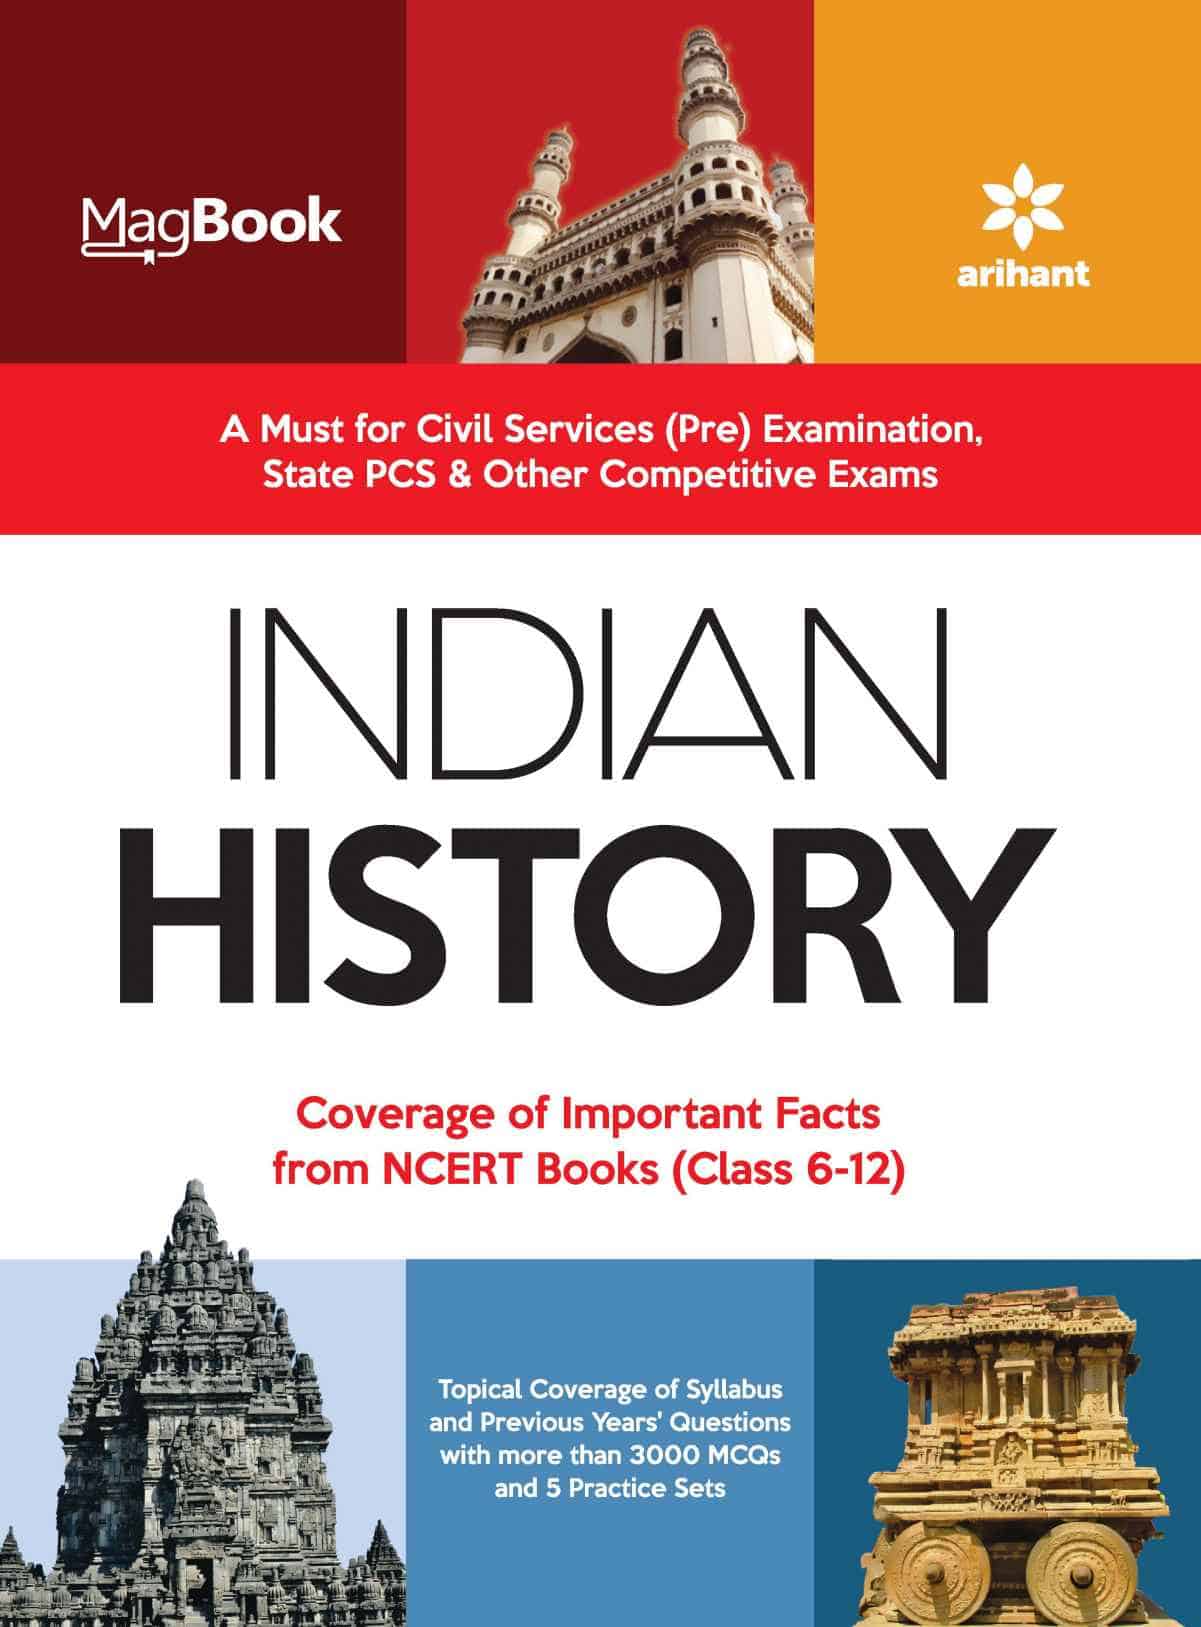 Arihant MagBook Indian History PDF [English Edition]